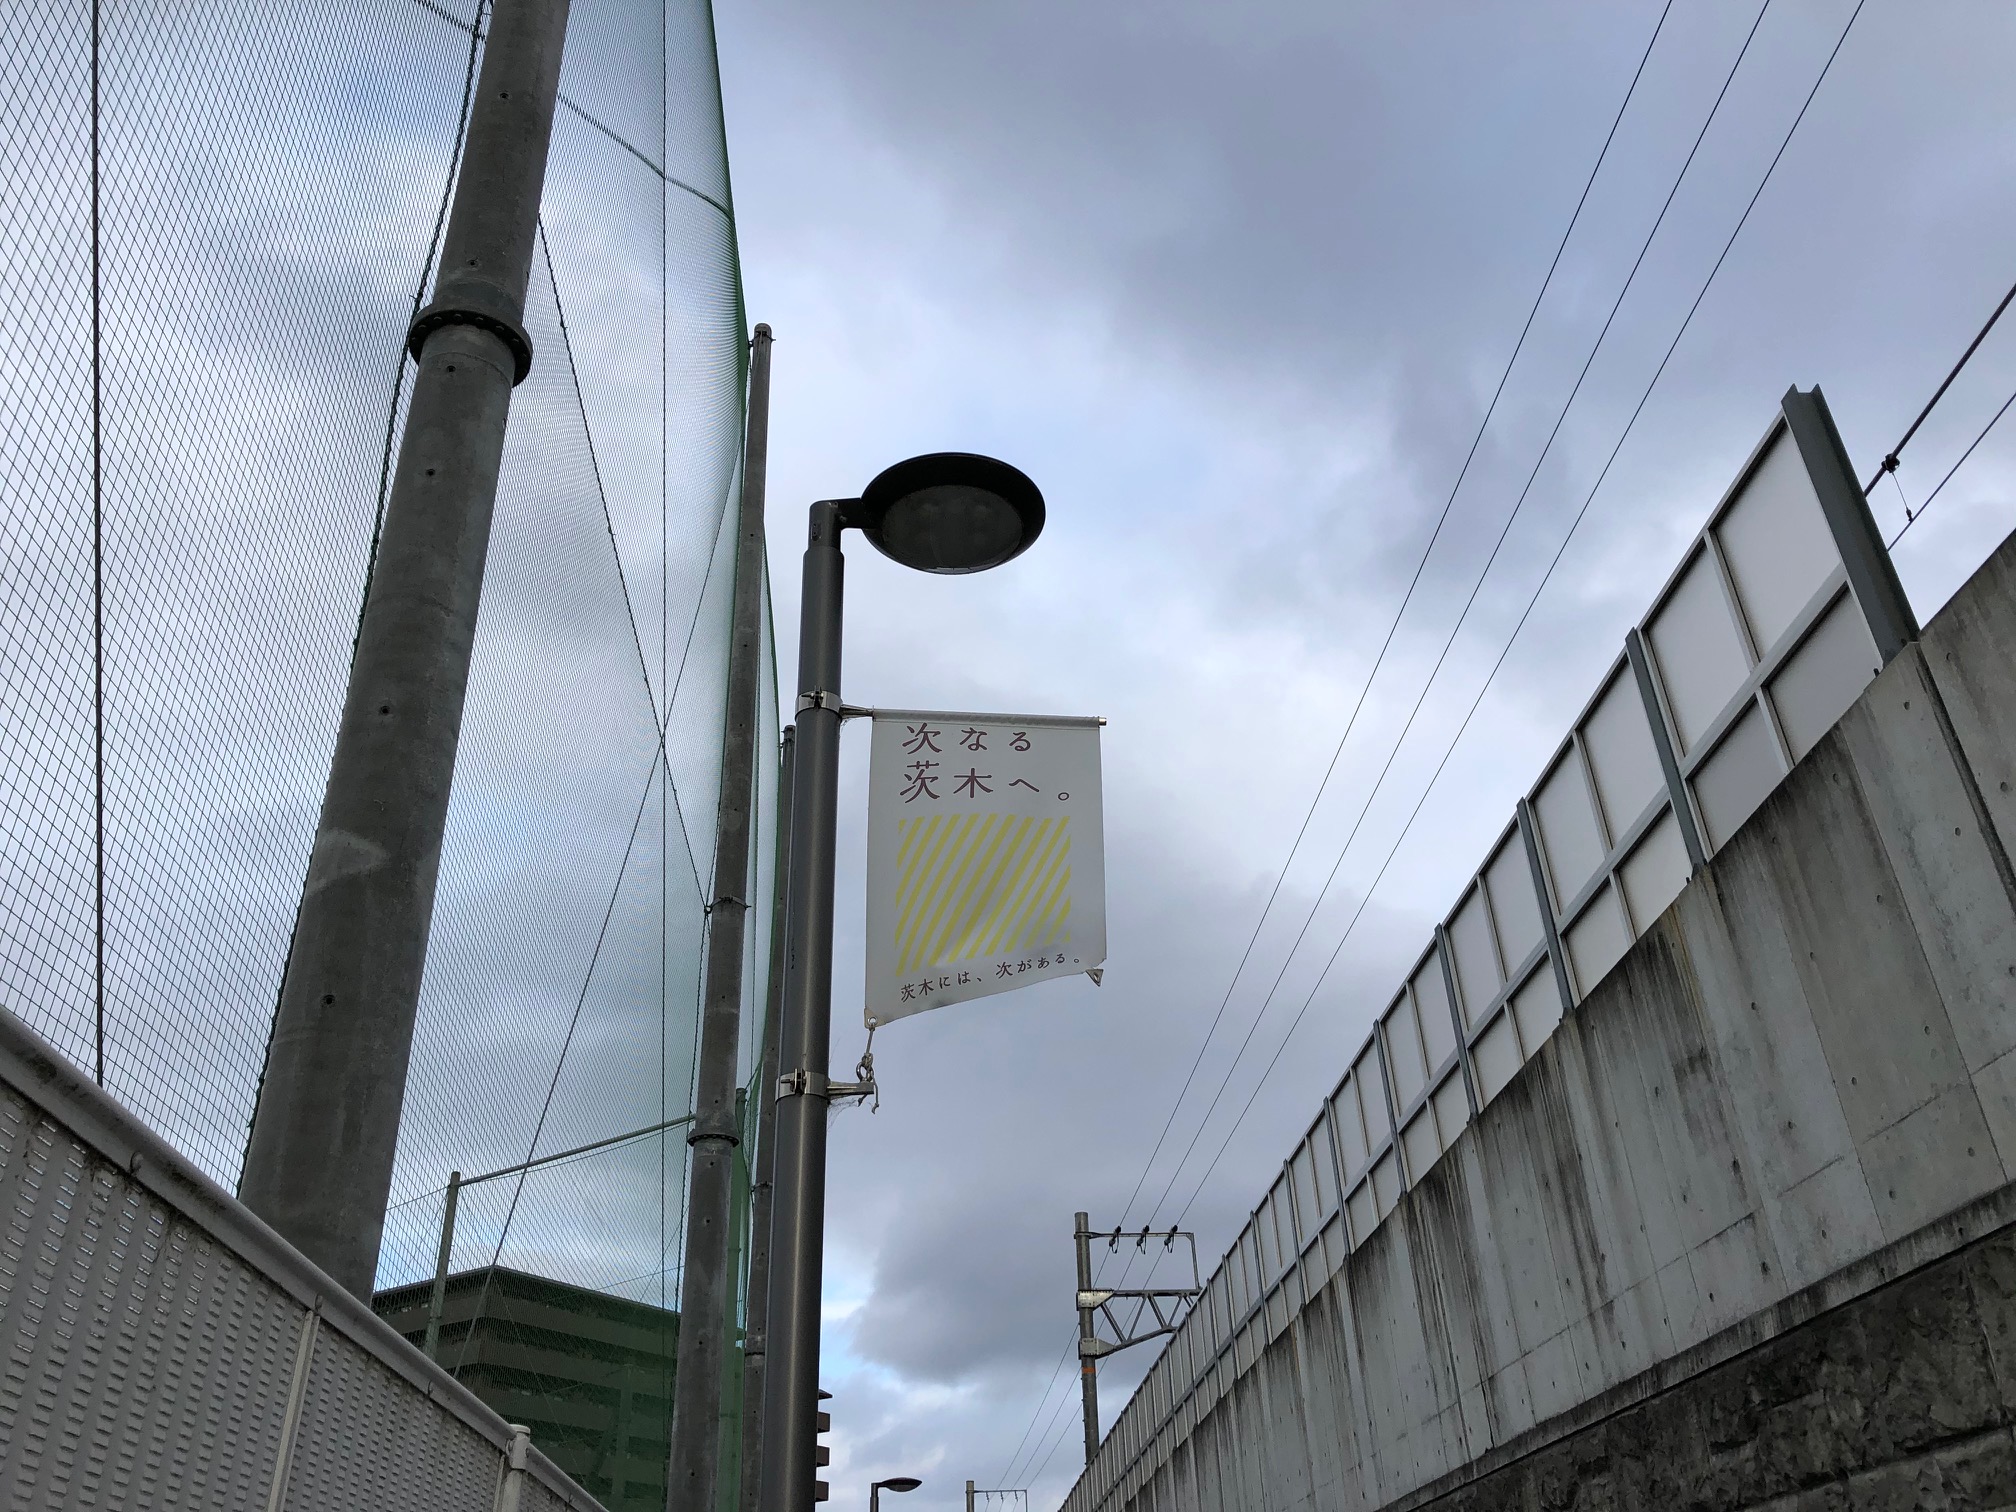 2018年に開業したJR総持寺駅に沿った歩道には「次なる茨木へ」と街灯フラッグが掲げられている。